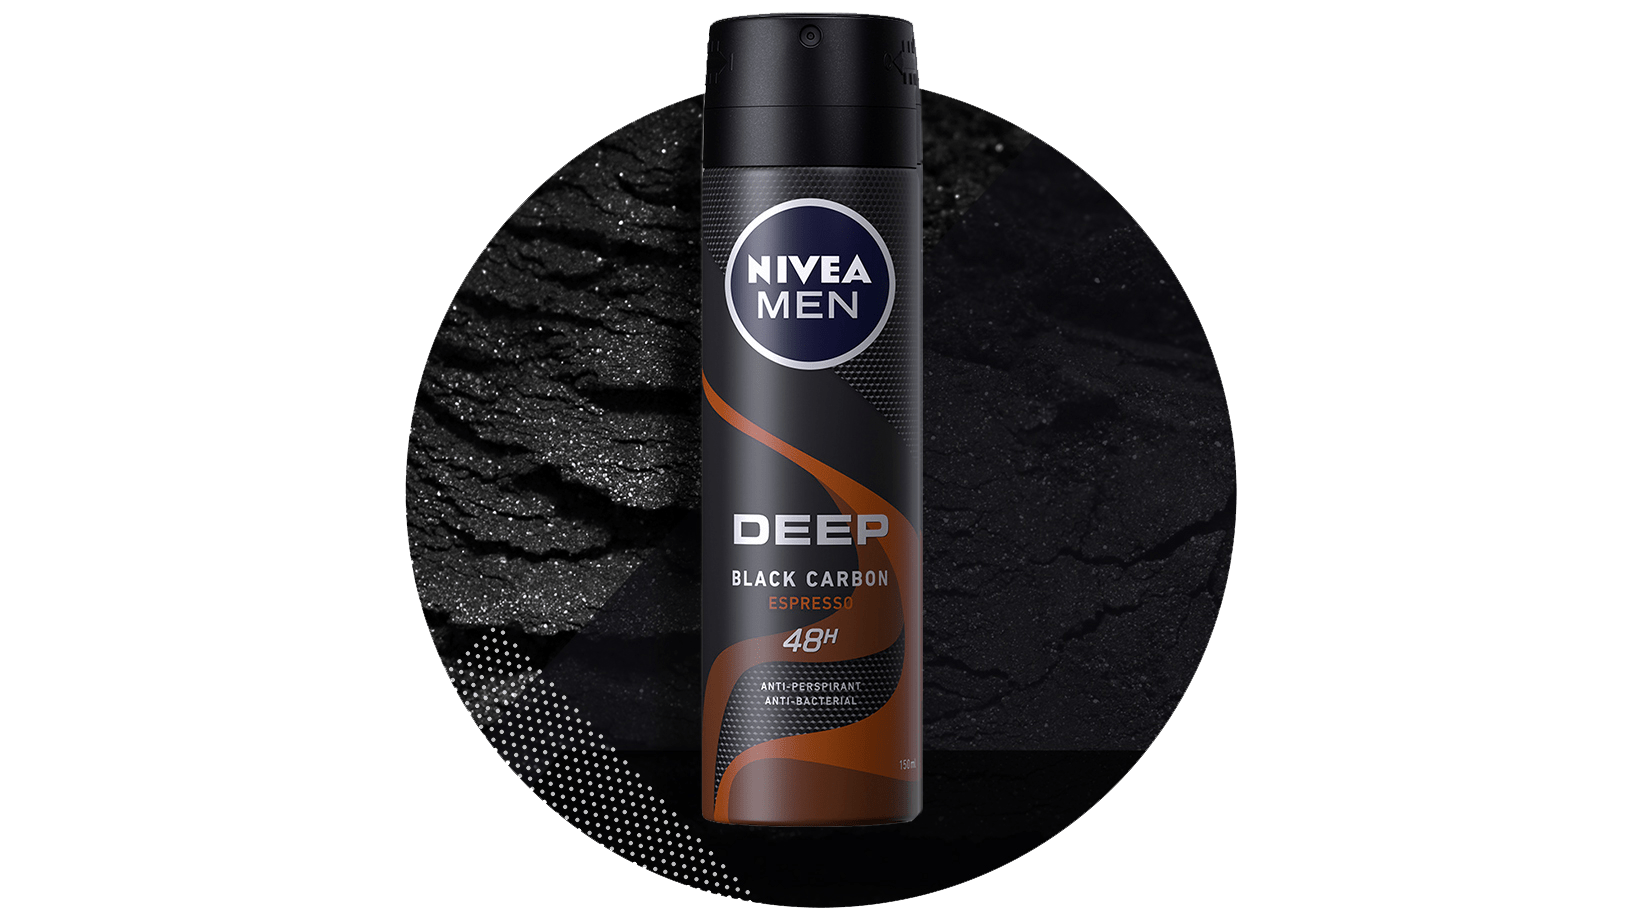 NIVEA-MEN-Desodorante-DEEP-expresso